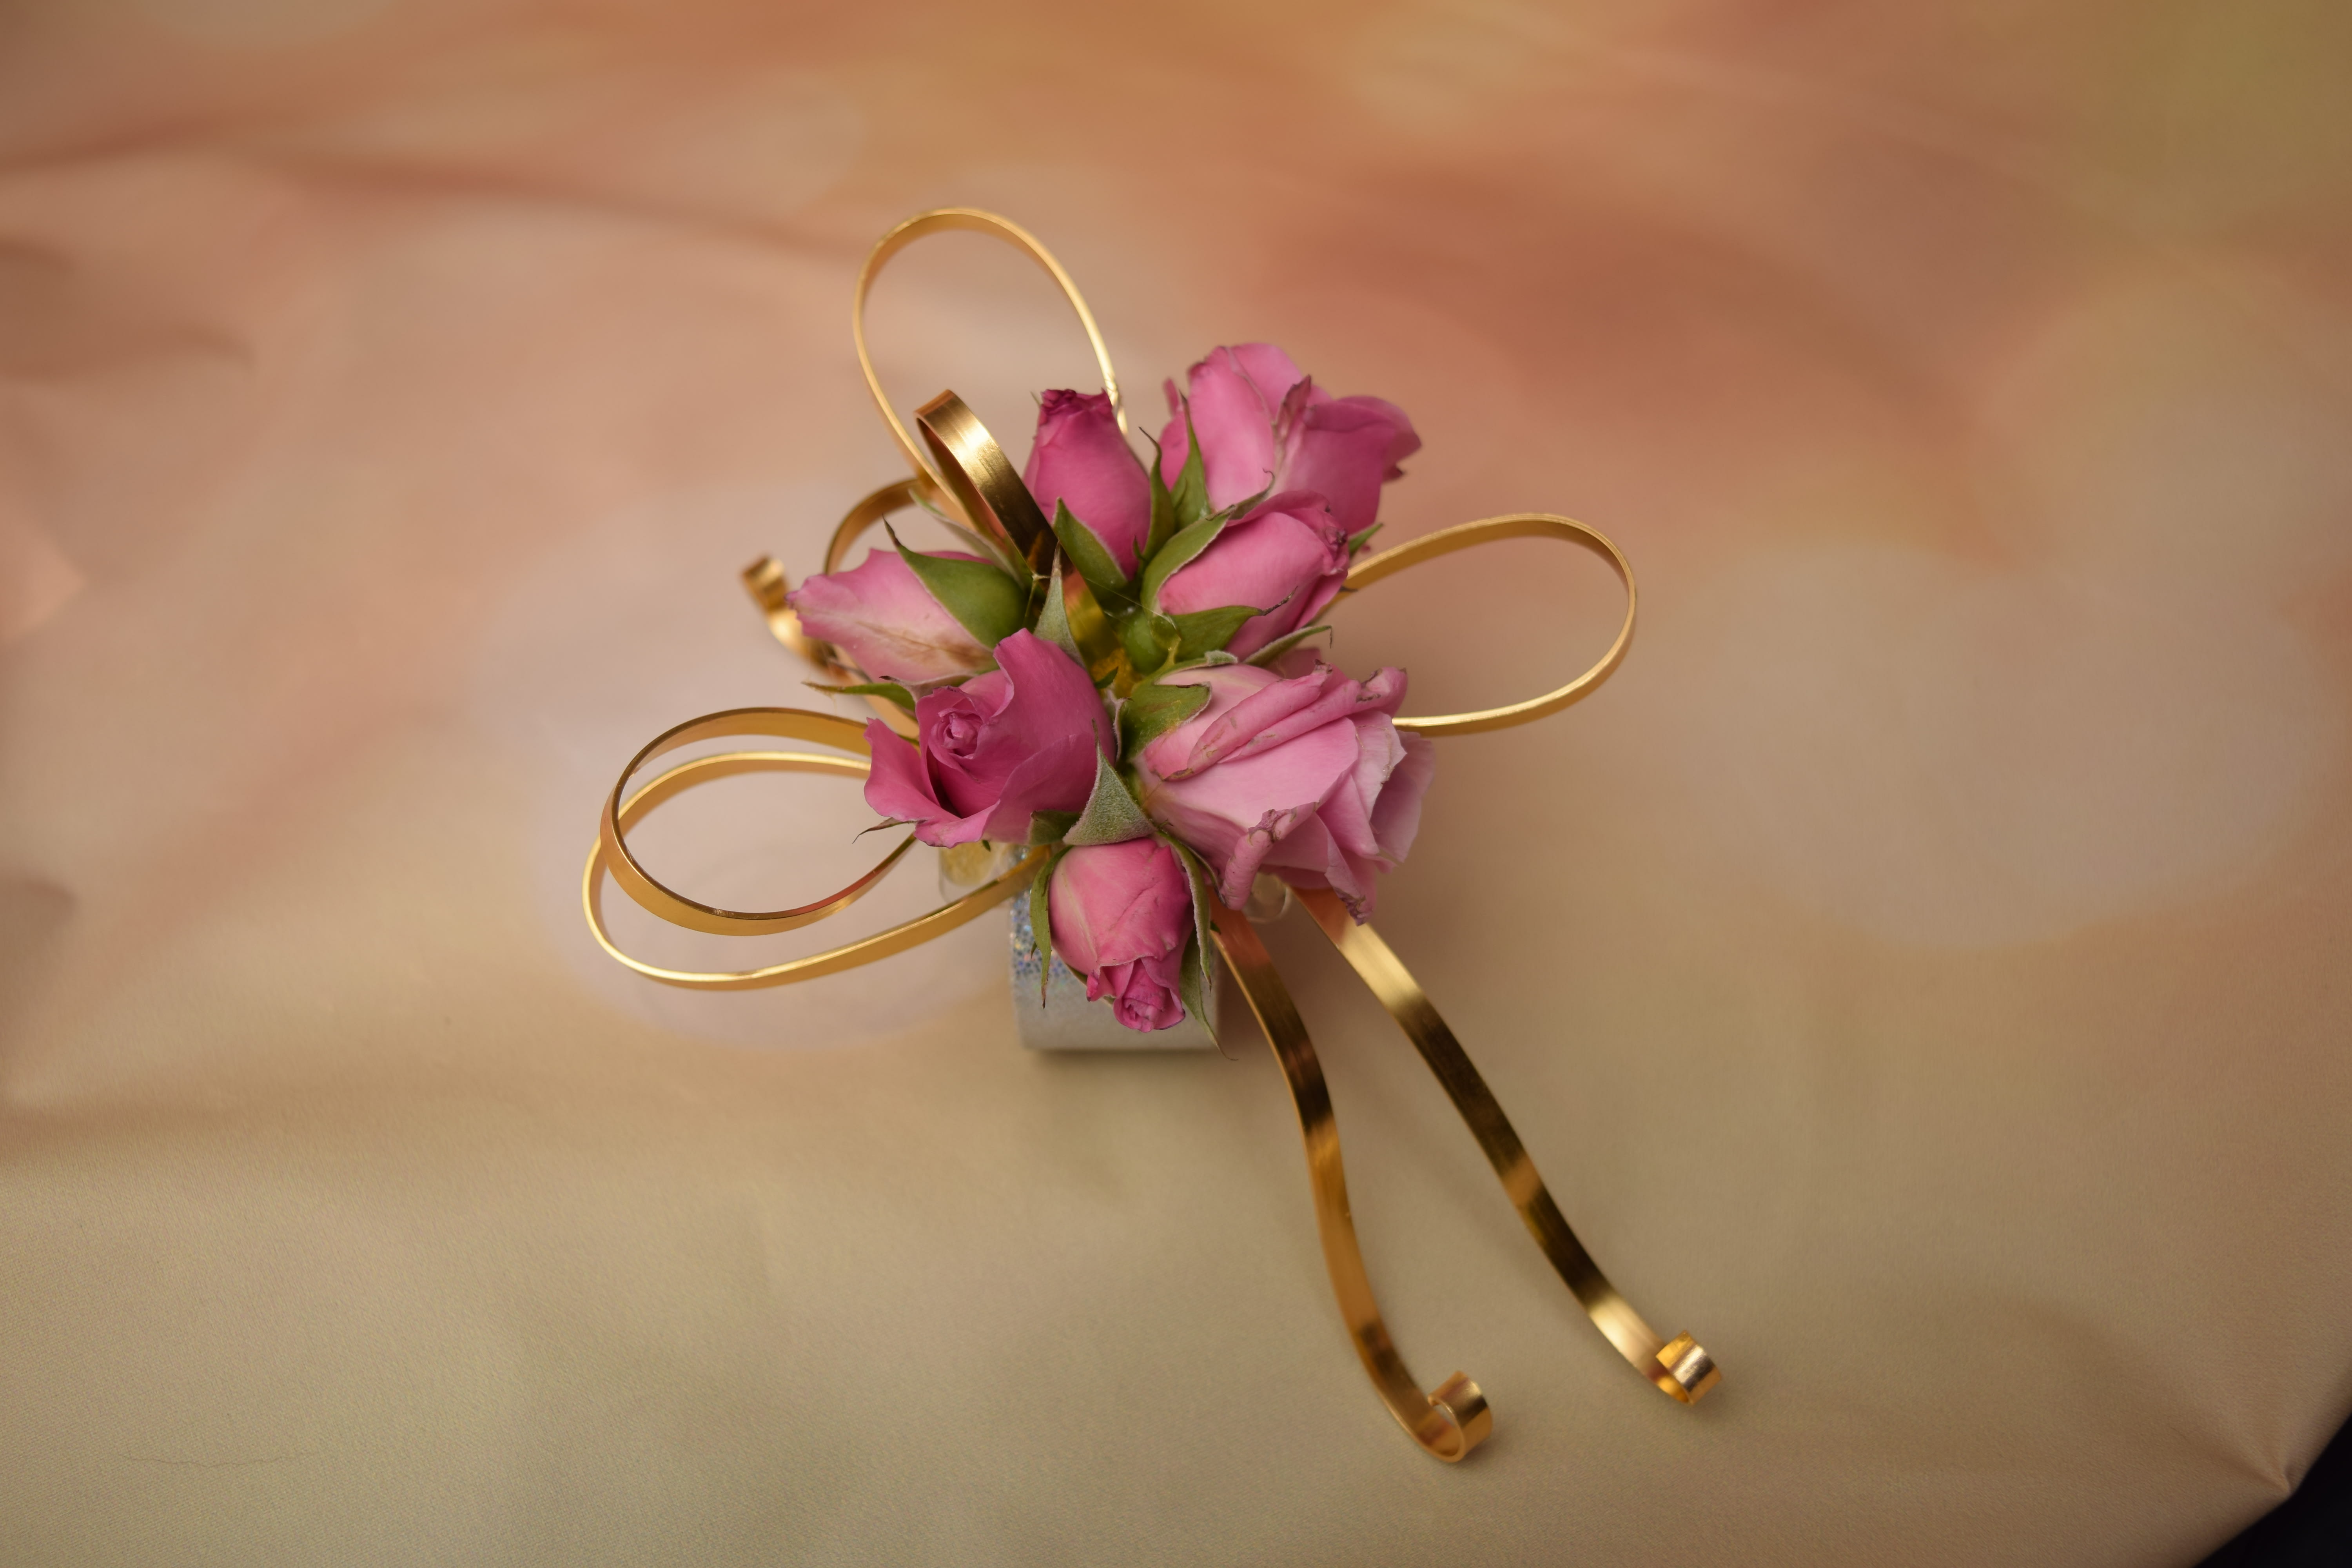 Zijn bekend ik ben ziek Zachte voeten Modern Rose Corsage by Lady Slipper Creations - Innovative Floral Design